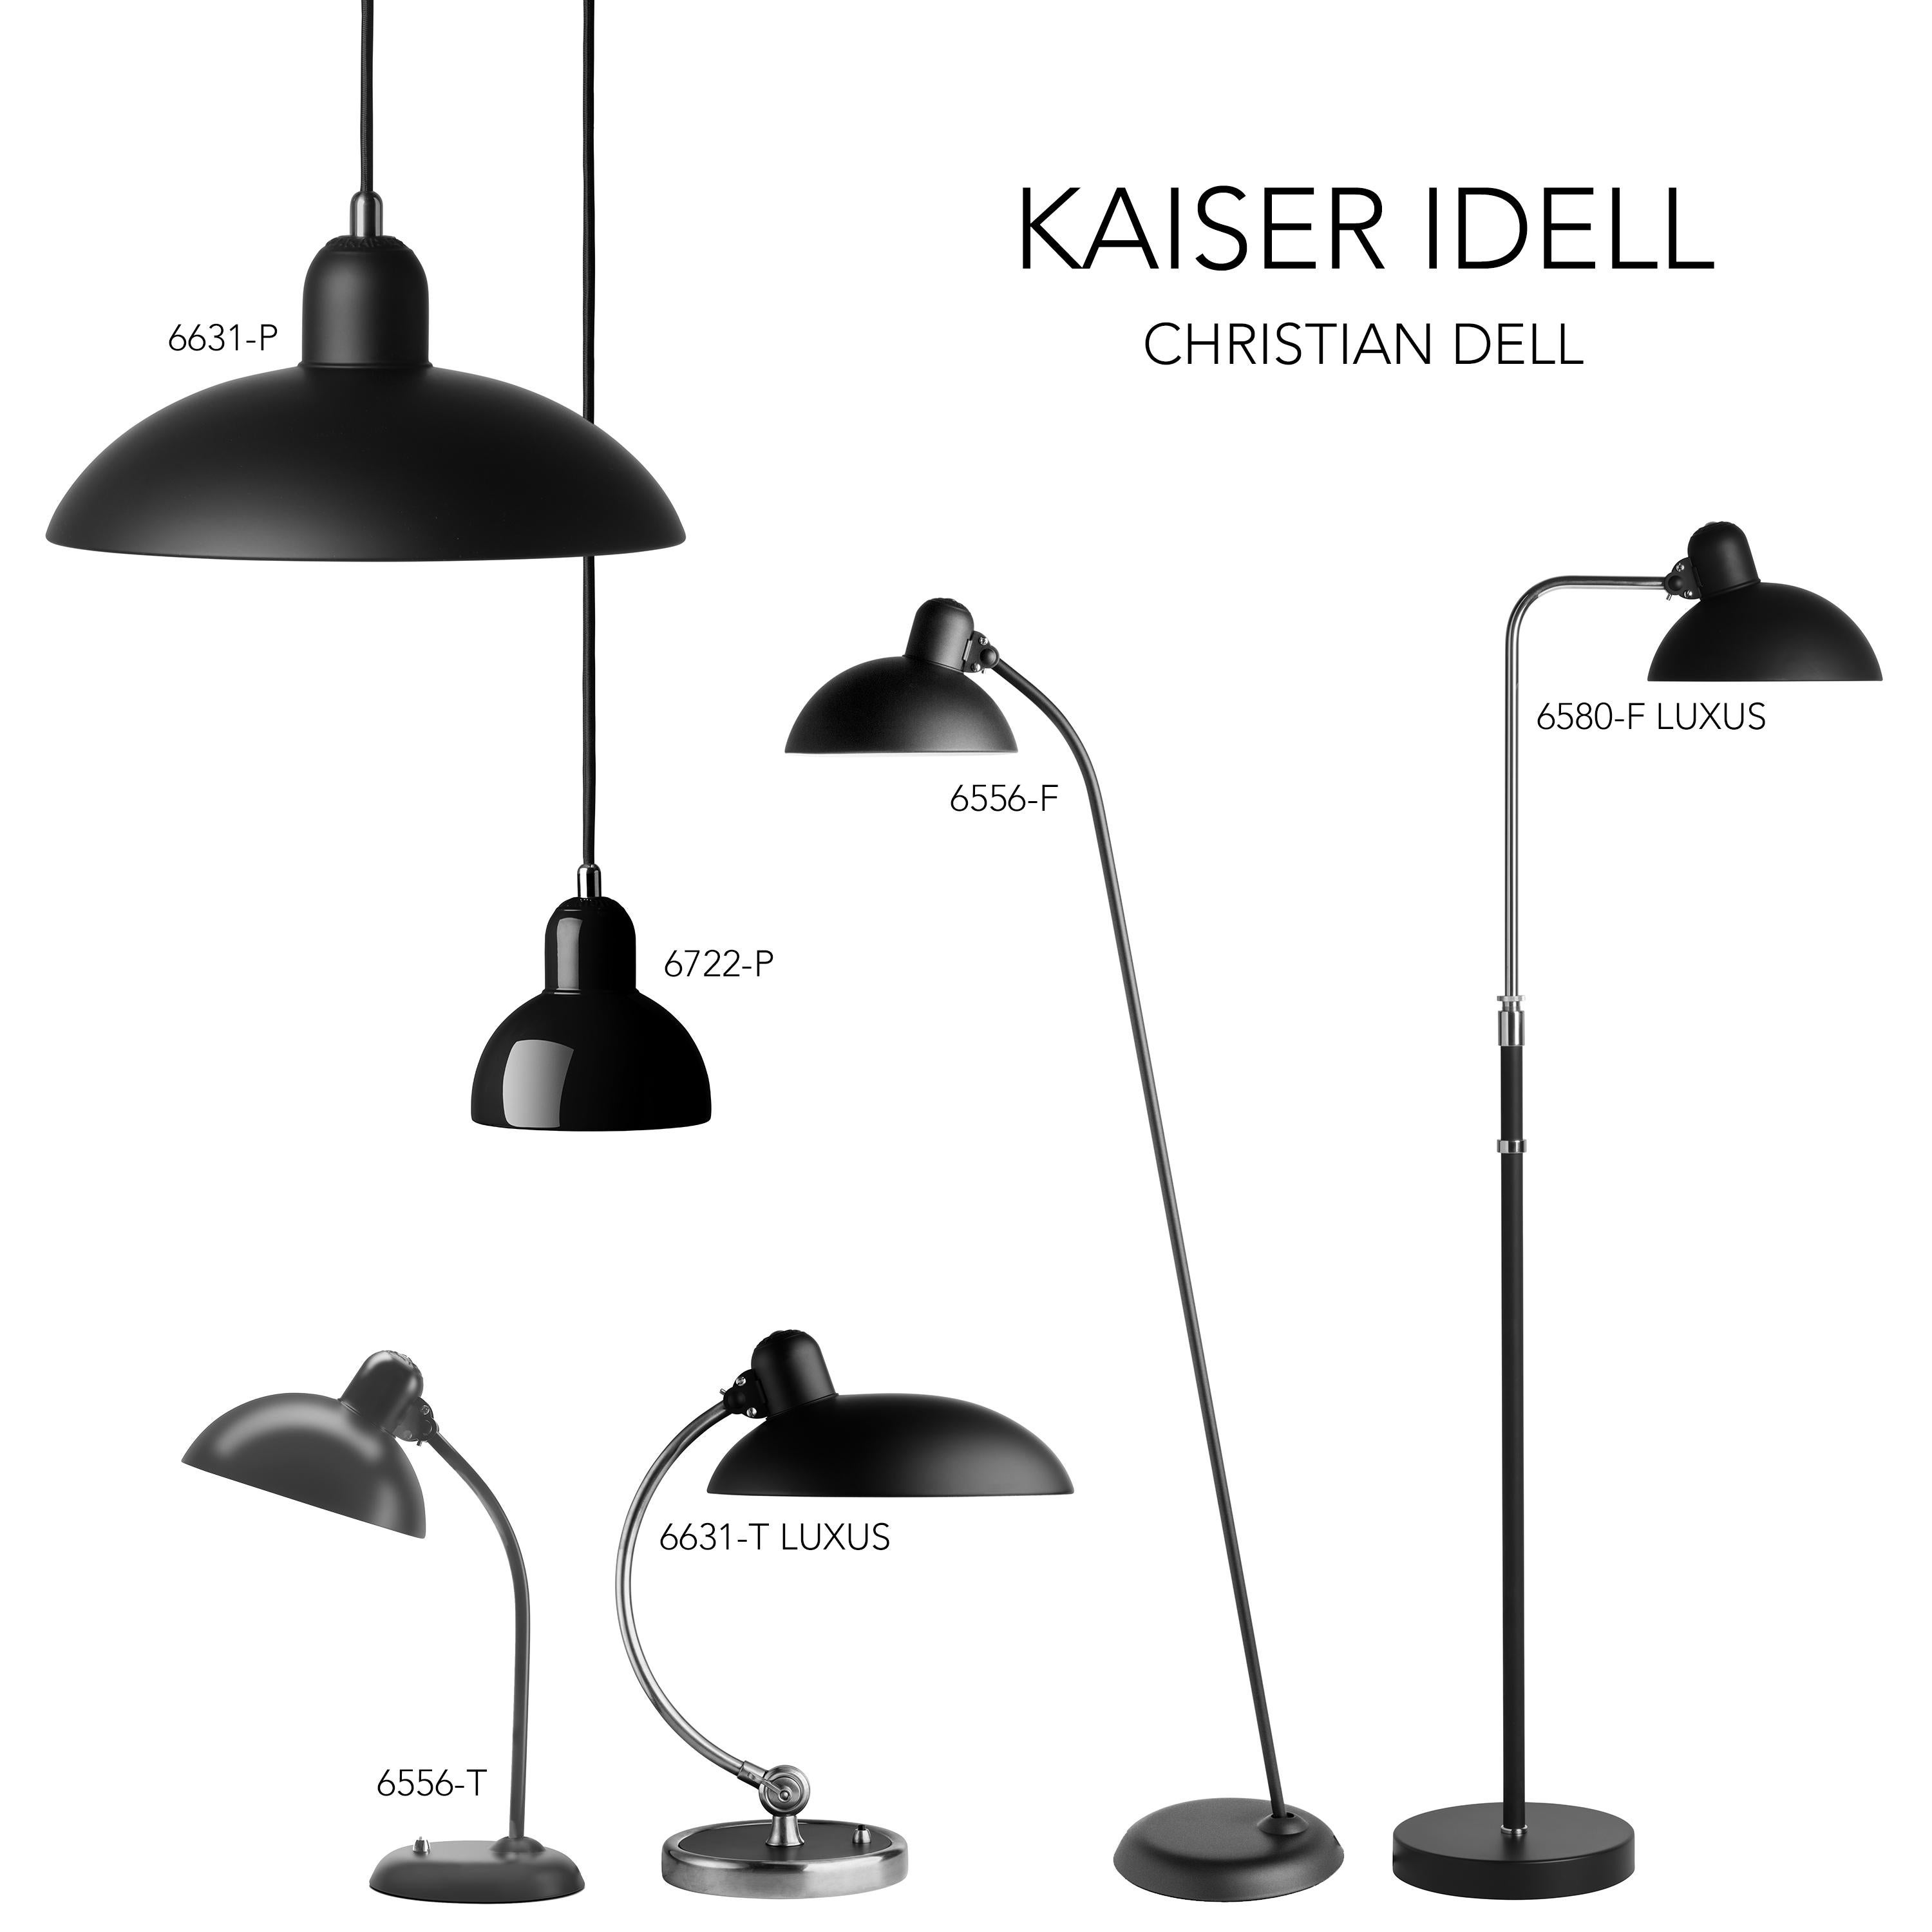 Christian Dell 'Kaiser Idell 6556-F' Floor Lamp for Fritz Hansen in Gloss Black For Sale 3